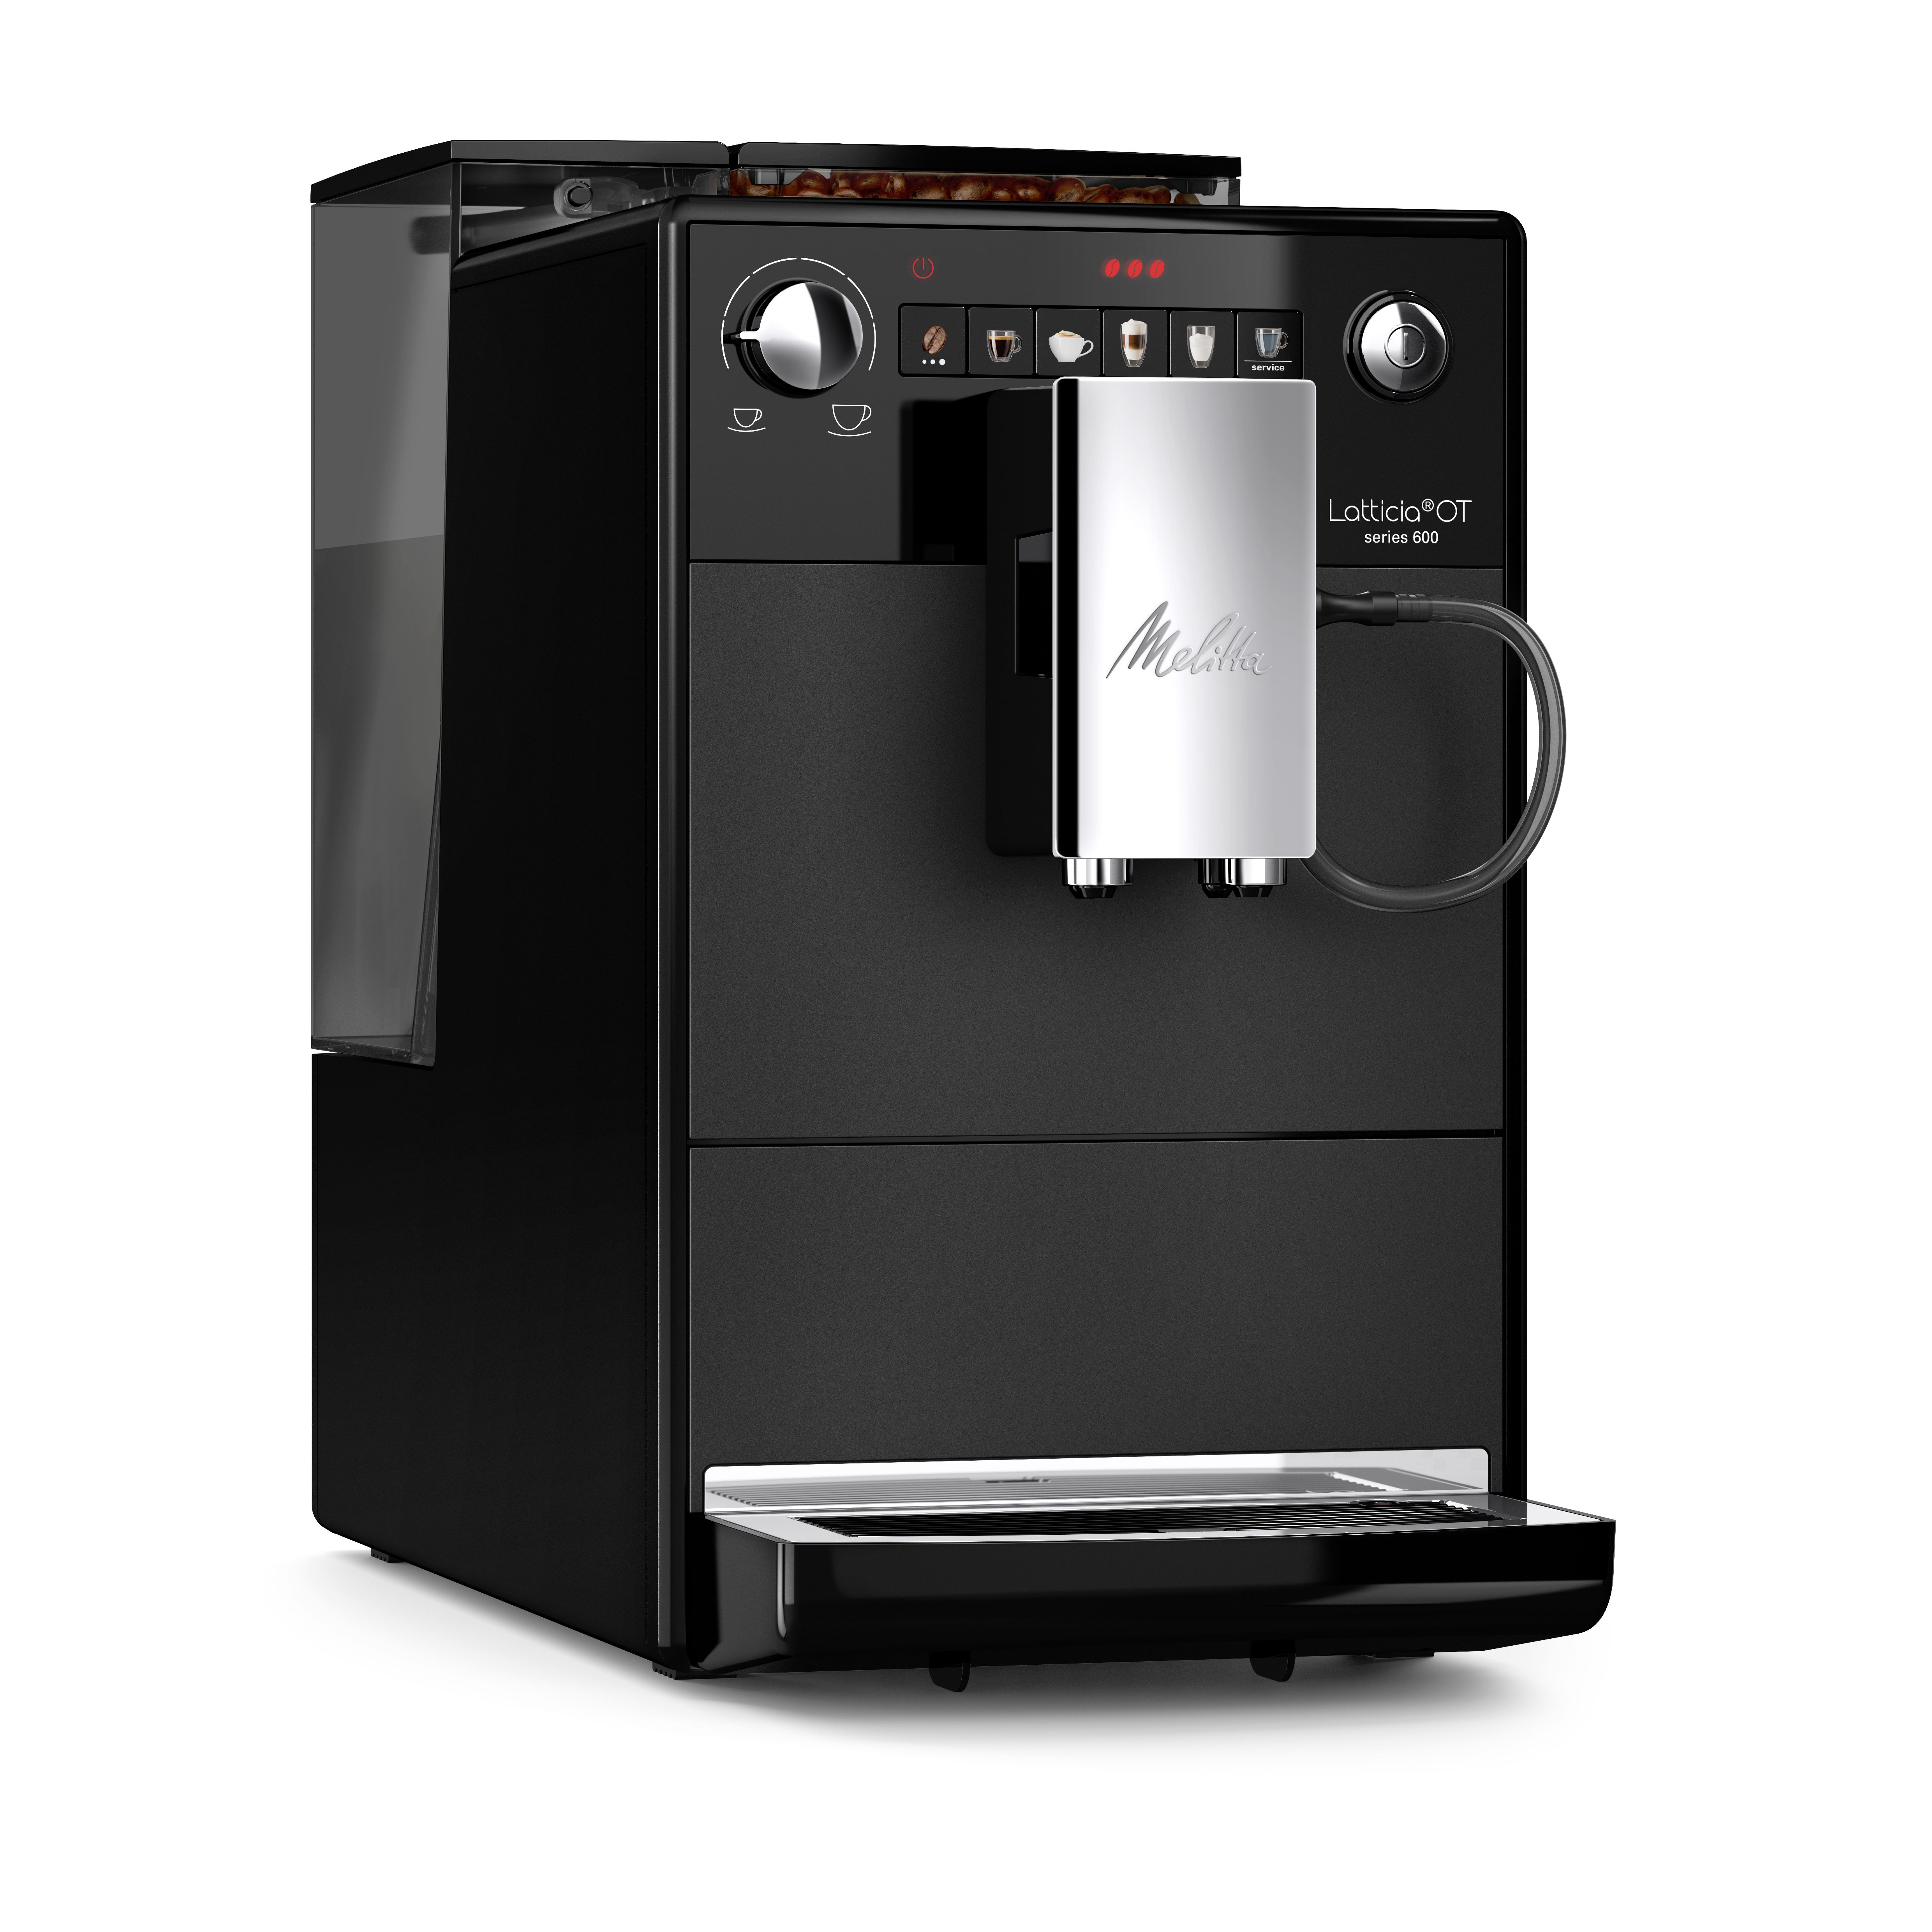 Máy pha cà phê tự động Melitta Latticia OT - Hàng nhập khẩu chính hãng 100% từ thương hiệu Melitta, Đức